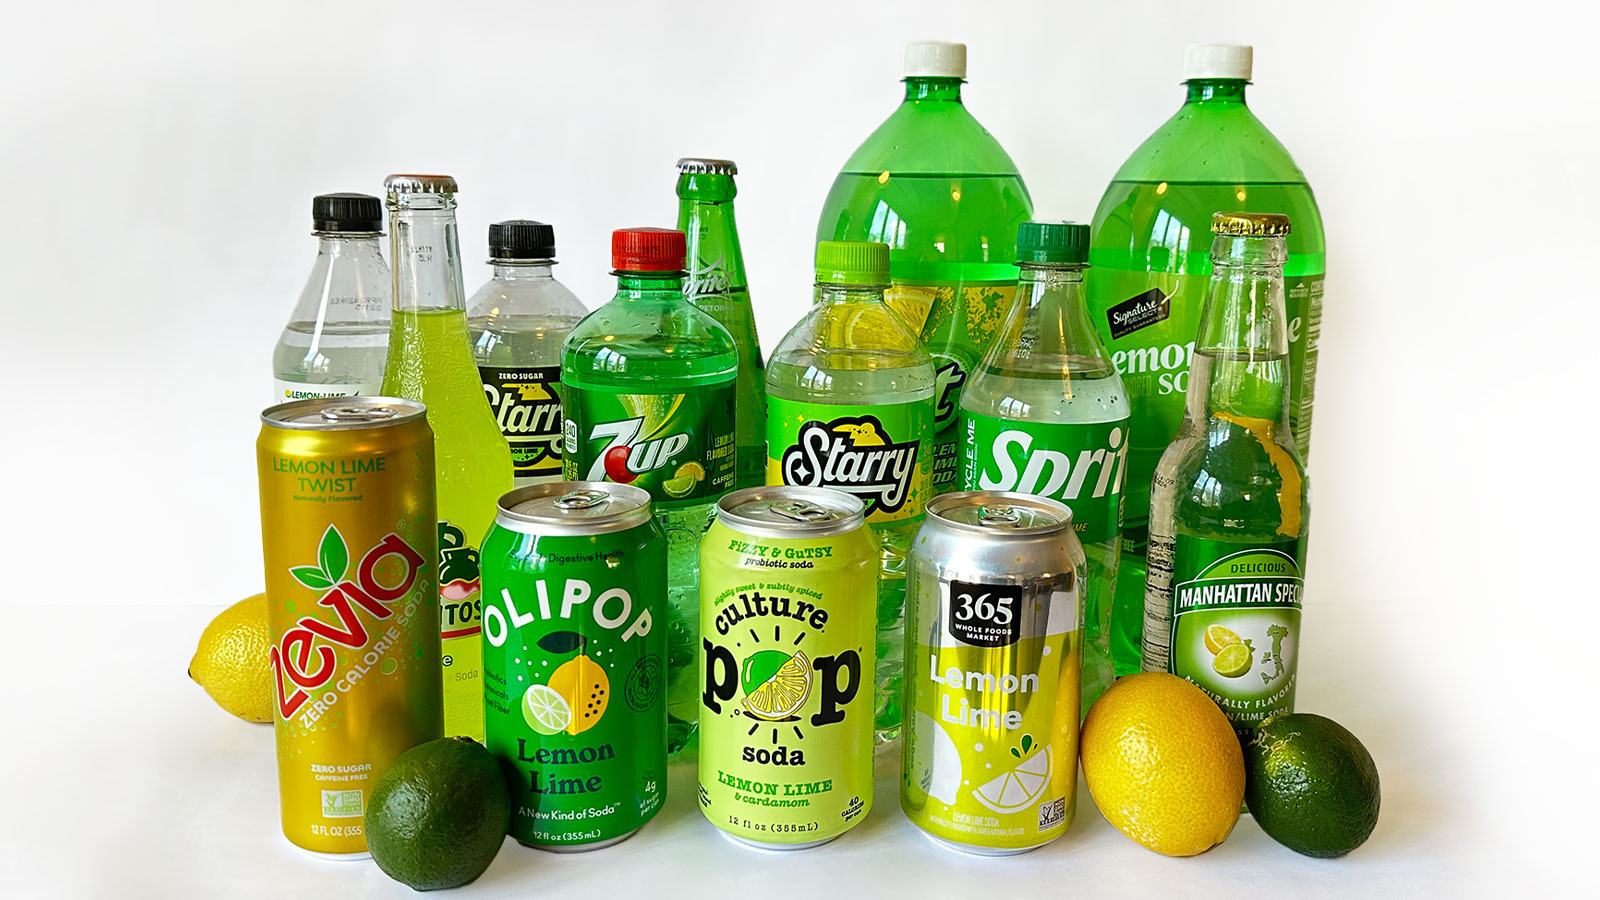 7UP Lemon Lime Soda - 20 fl oz Bottle